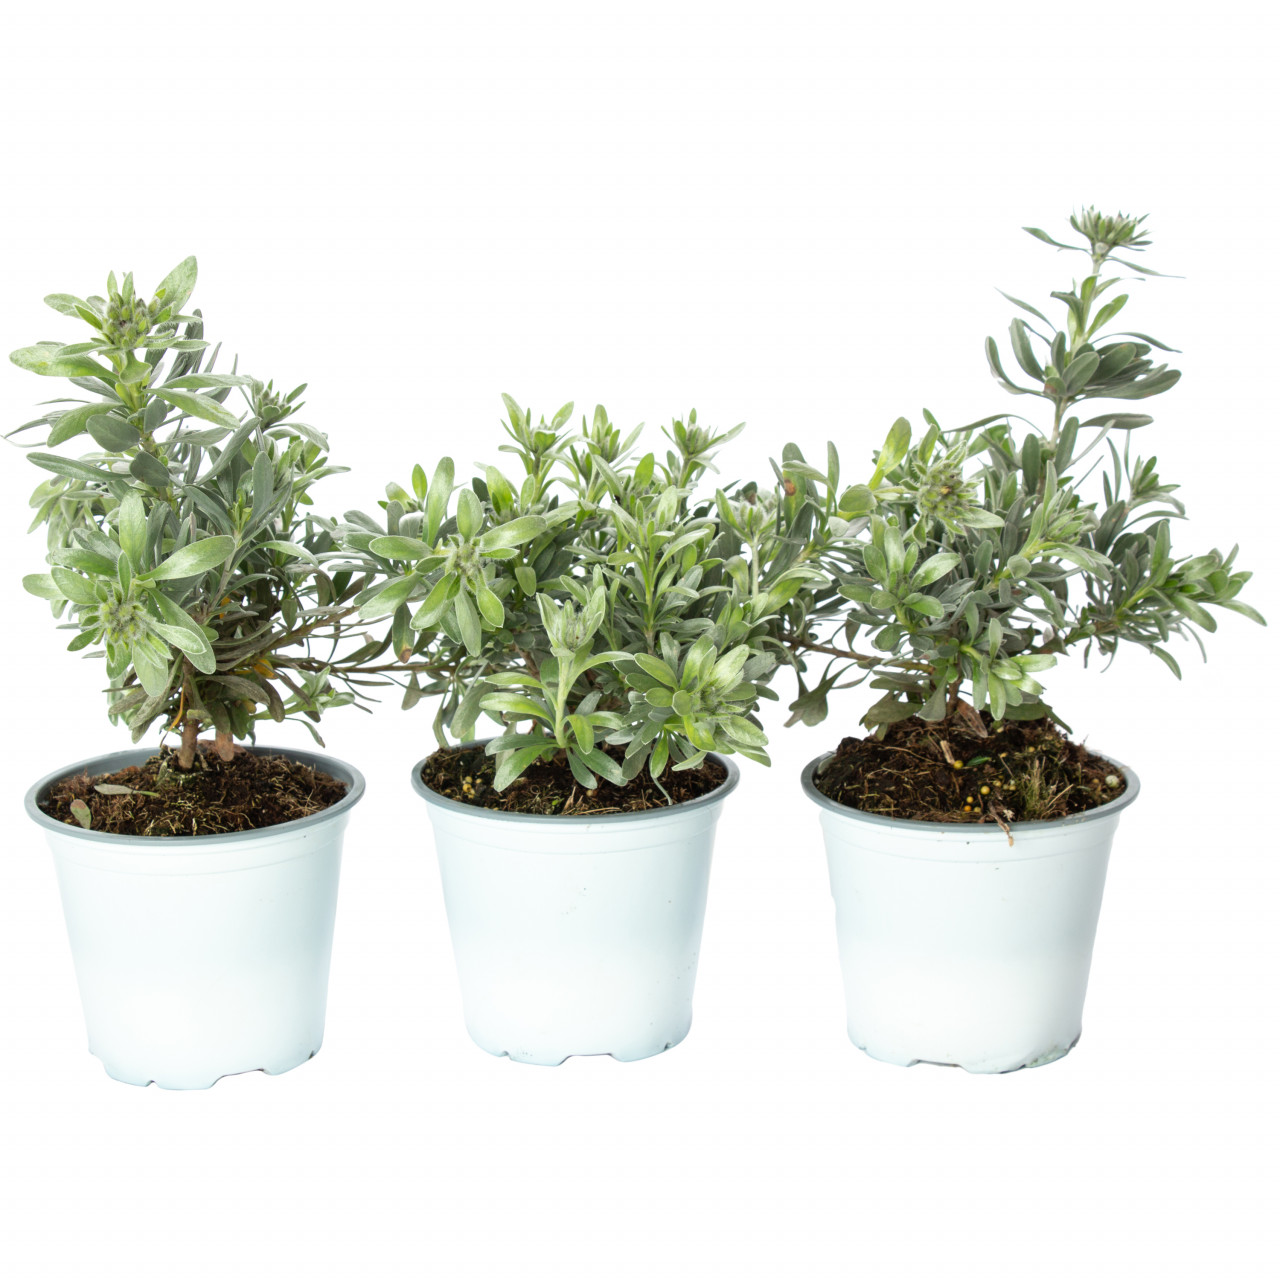 Volbura argintie, Convolvulus cneorum, planta naturala decorativa, in ghiveci P14, 20/30cm